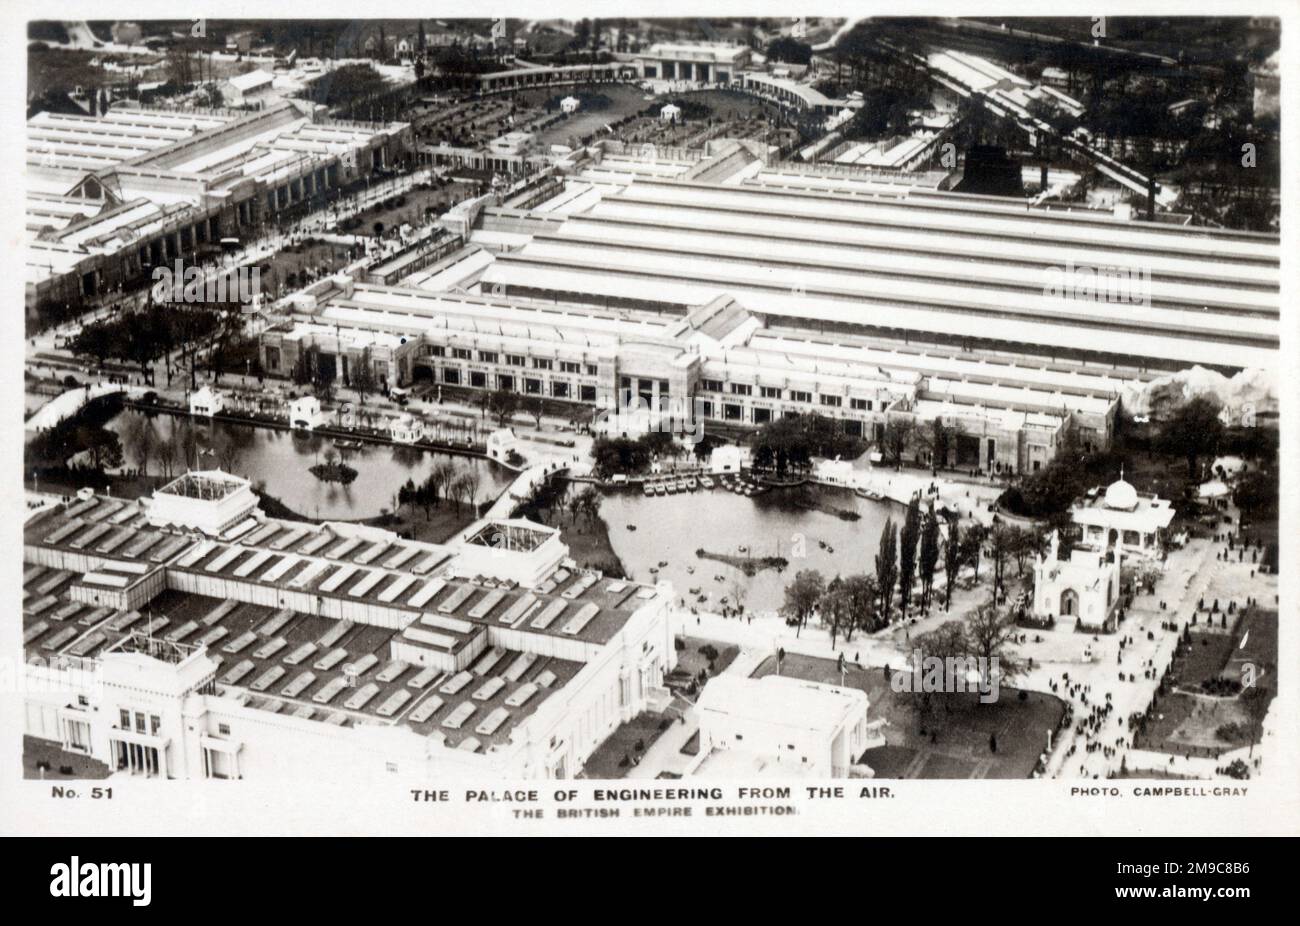 British Empire Exhibition, mostra coloniale tenutasi a Wembley Park, Londra, Inghilterra dal 23 aprile al 1 novembre 1924 e dal 9 maggio al 31 ottobre 1925. Il Palazzo di Ingegneria. vista dall'alto. Foto Stock